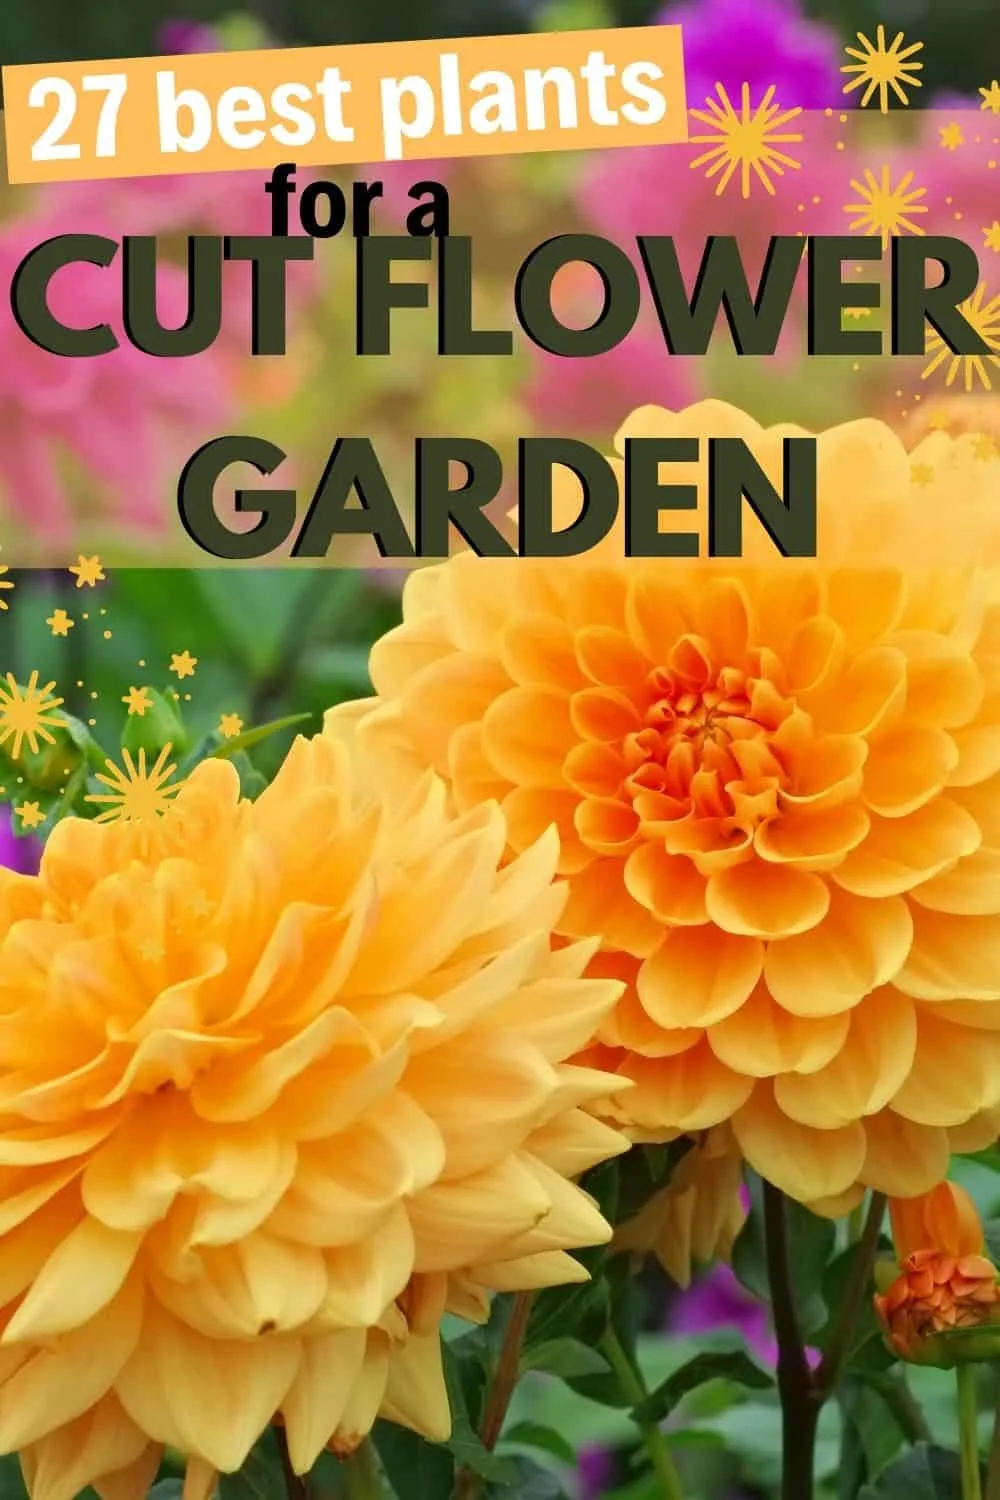 27 best plants for a cut flower garden